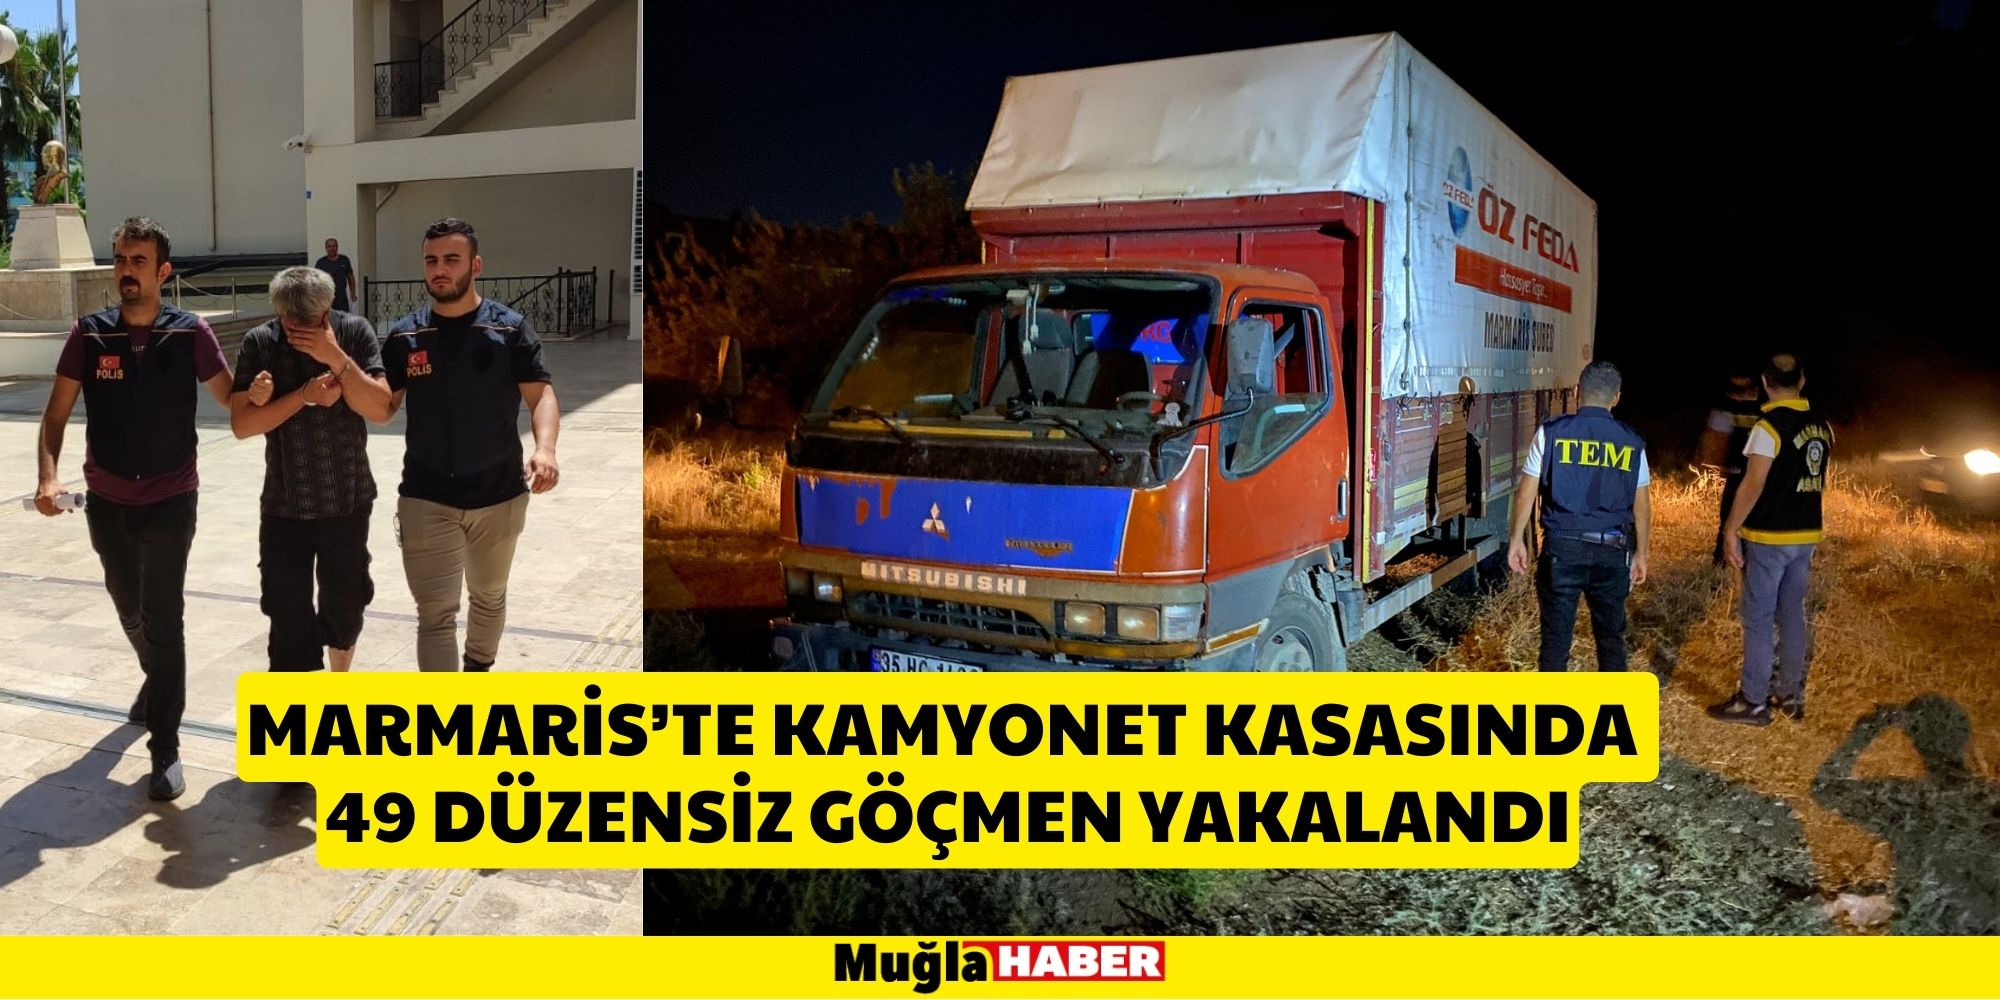 Marmaris'te kamyonet kasasında 49 düzensiz göçmen yakalandı